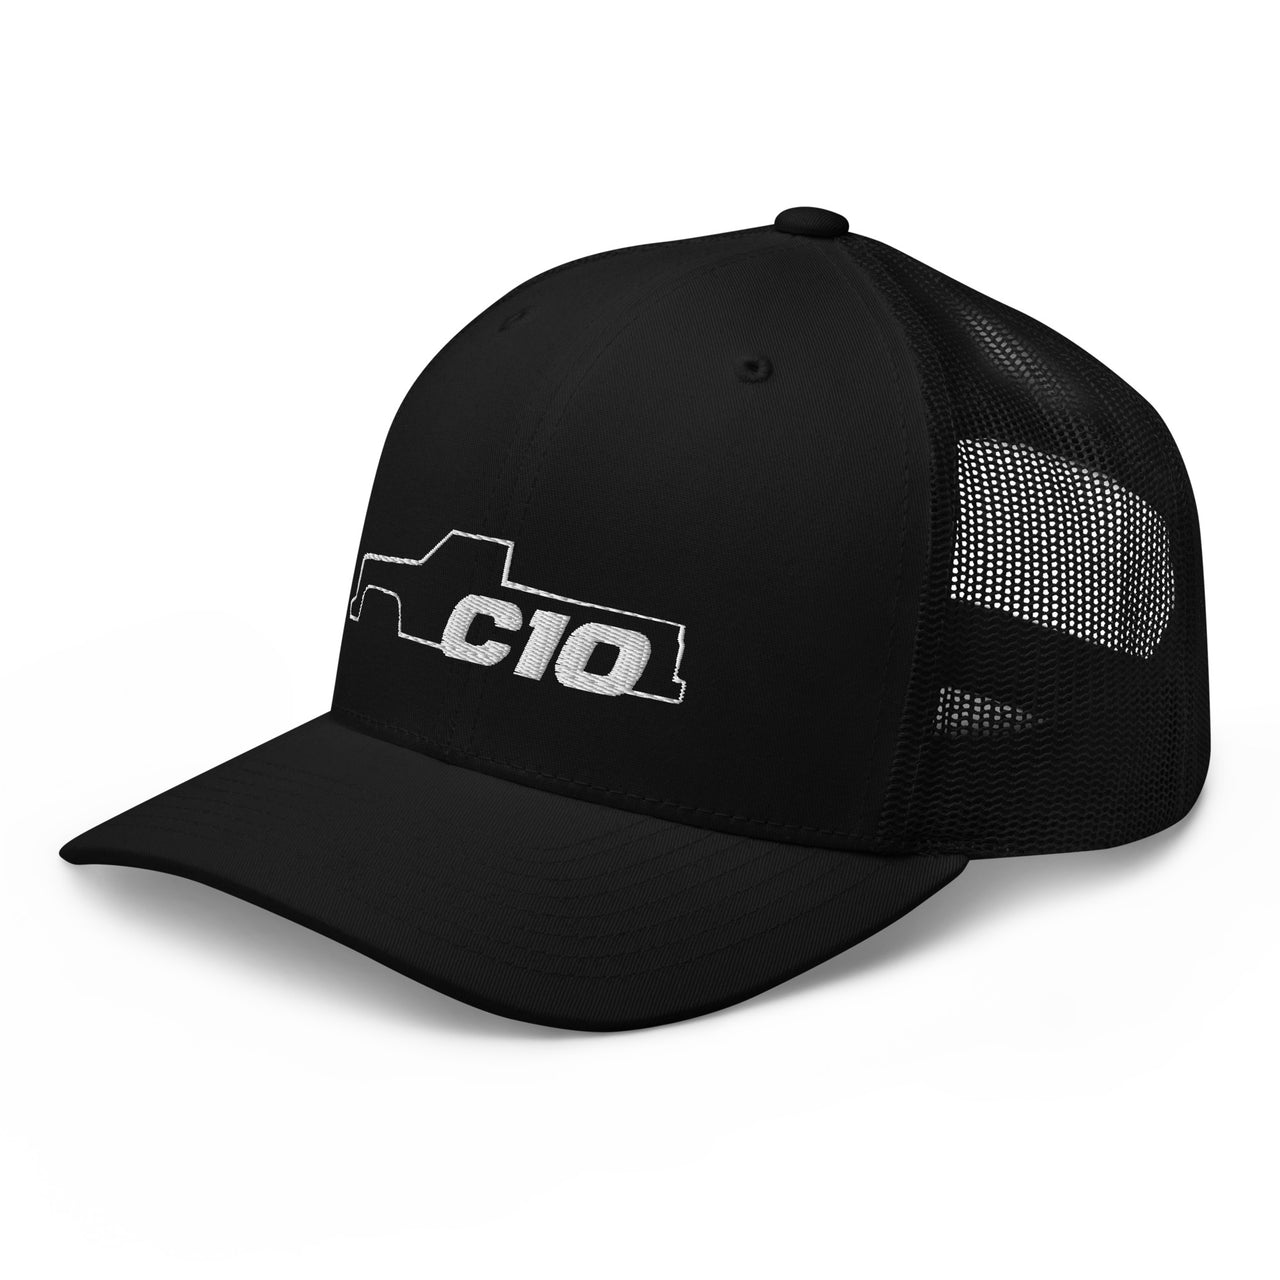 C10 Trucker hat in black 3/4 left view